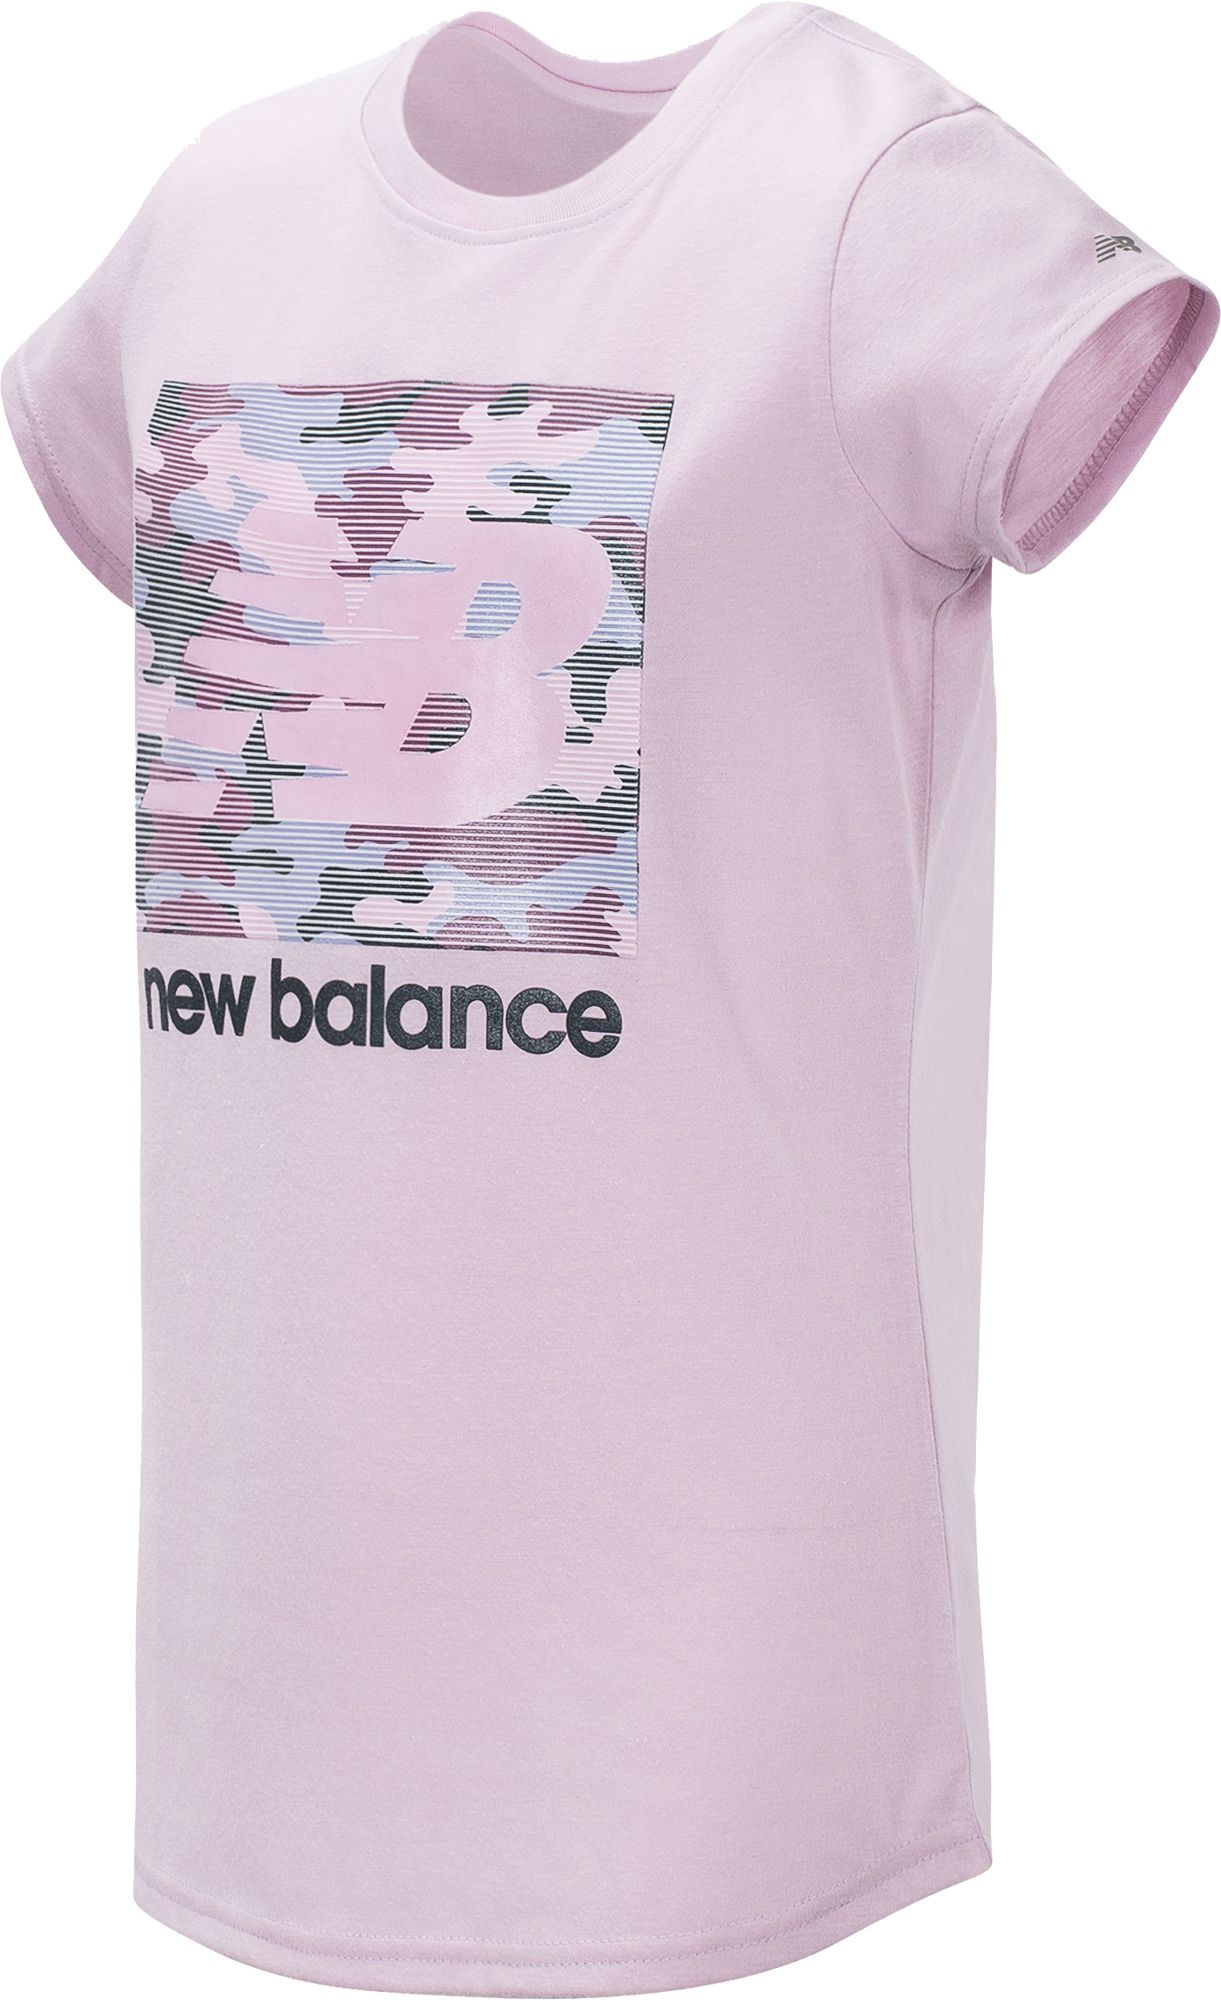 new balance pink t shirt